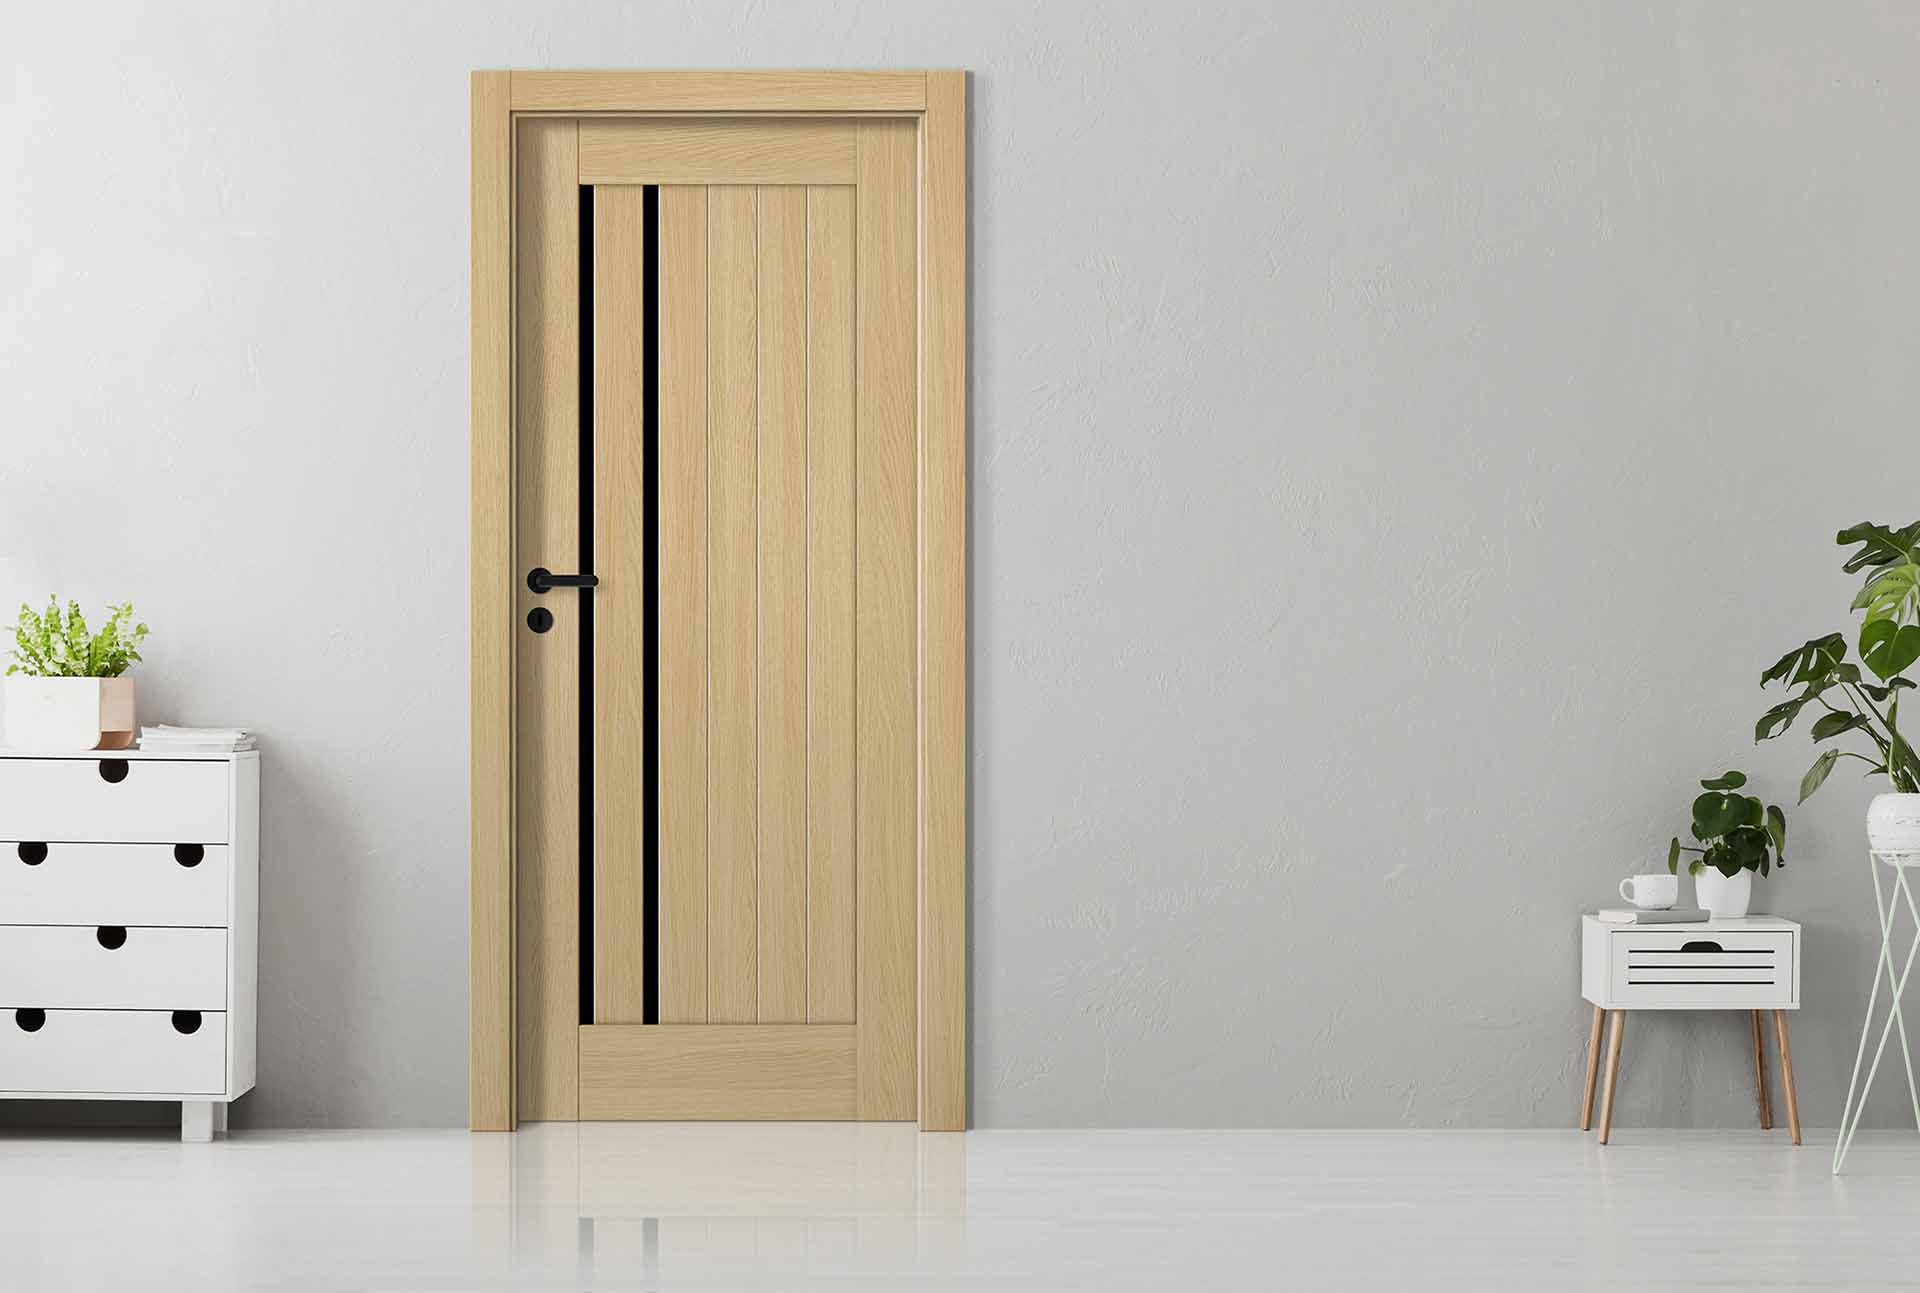 Barański Optimo – wyższy standard drzwi okleinowanych